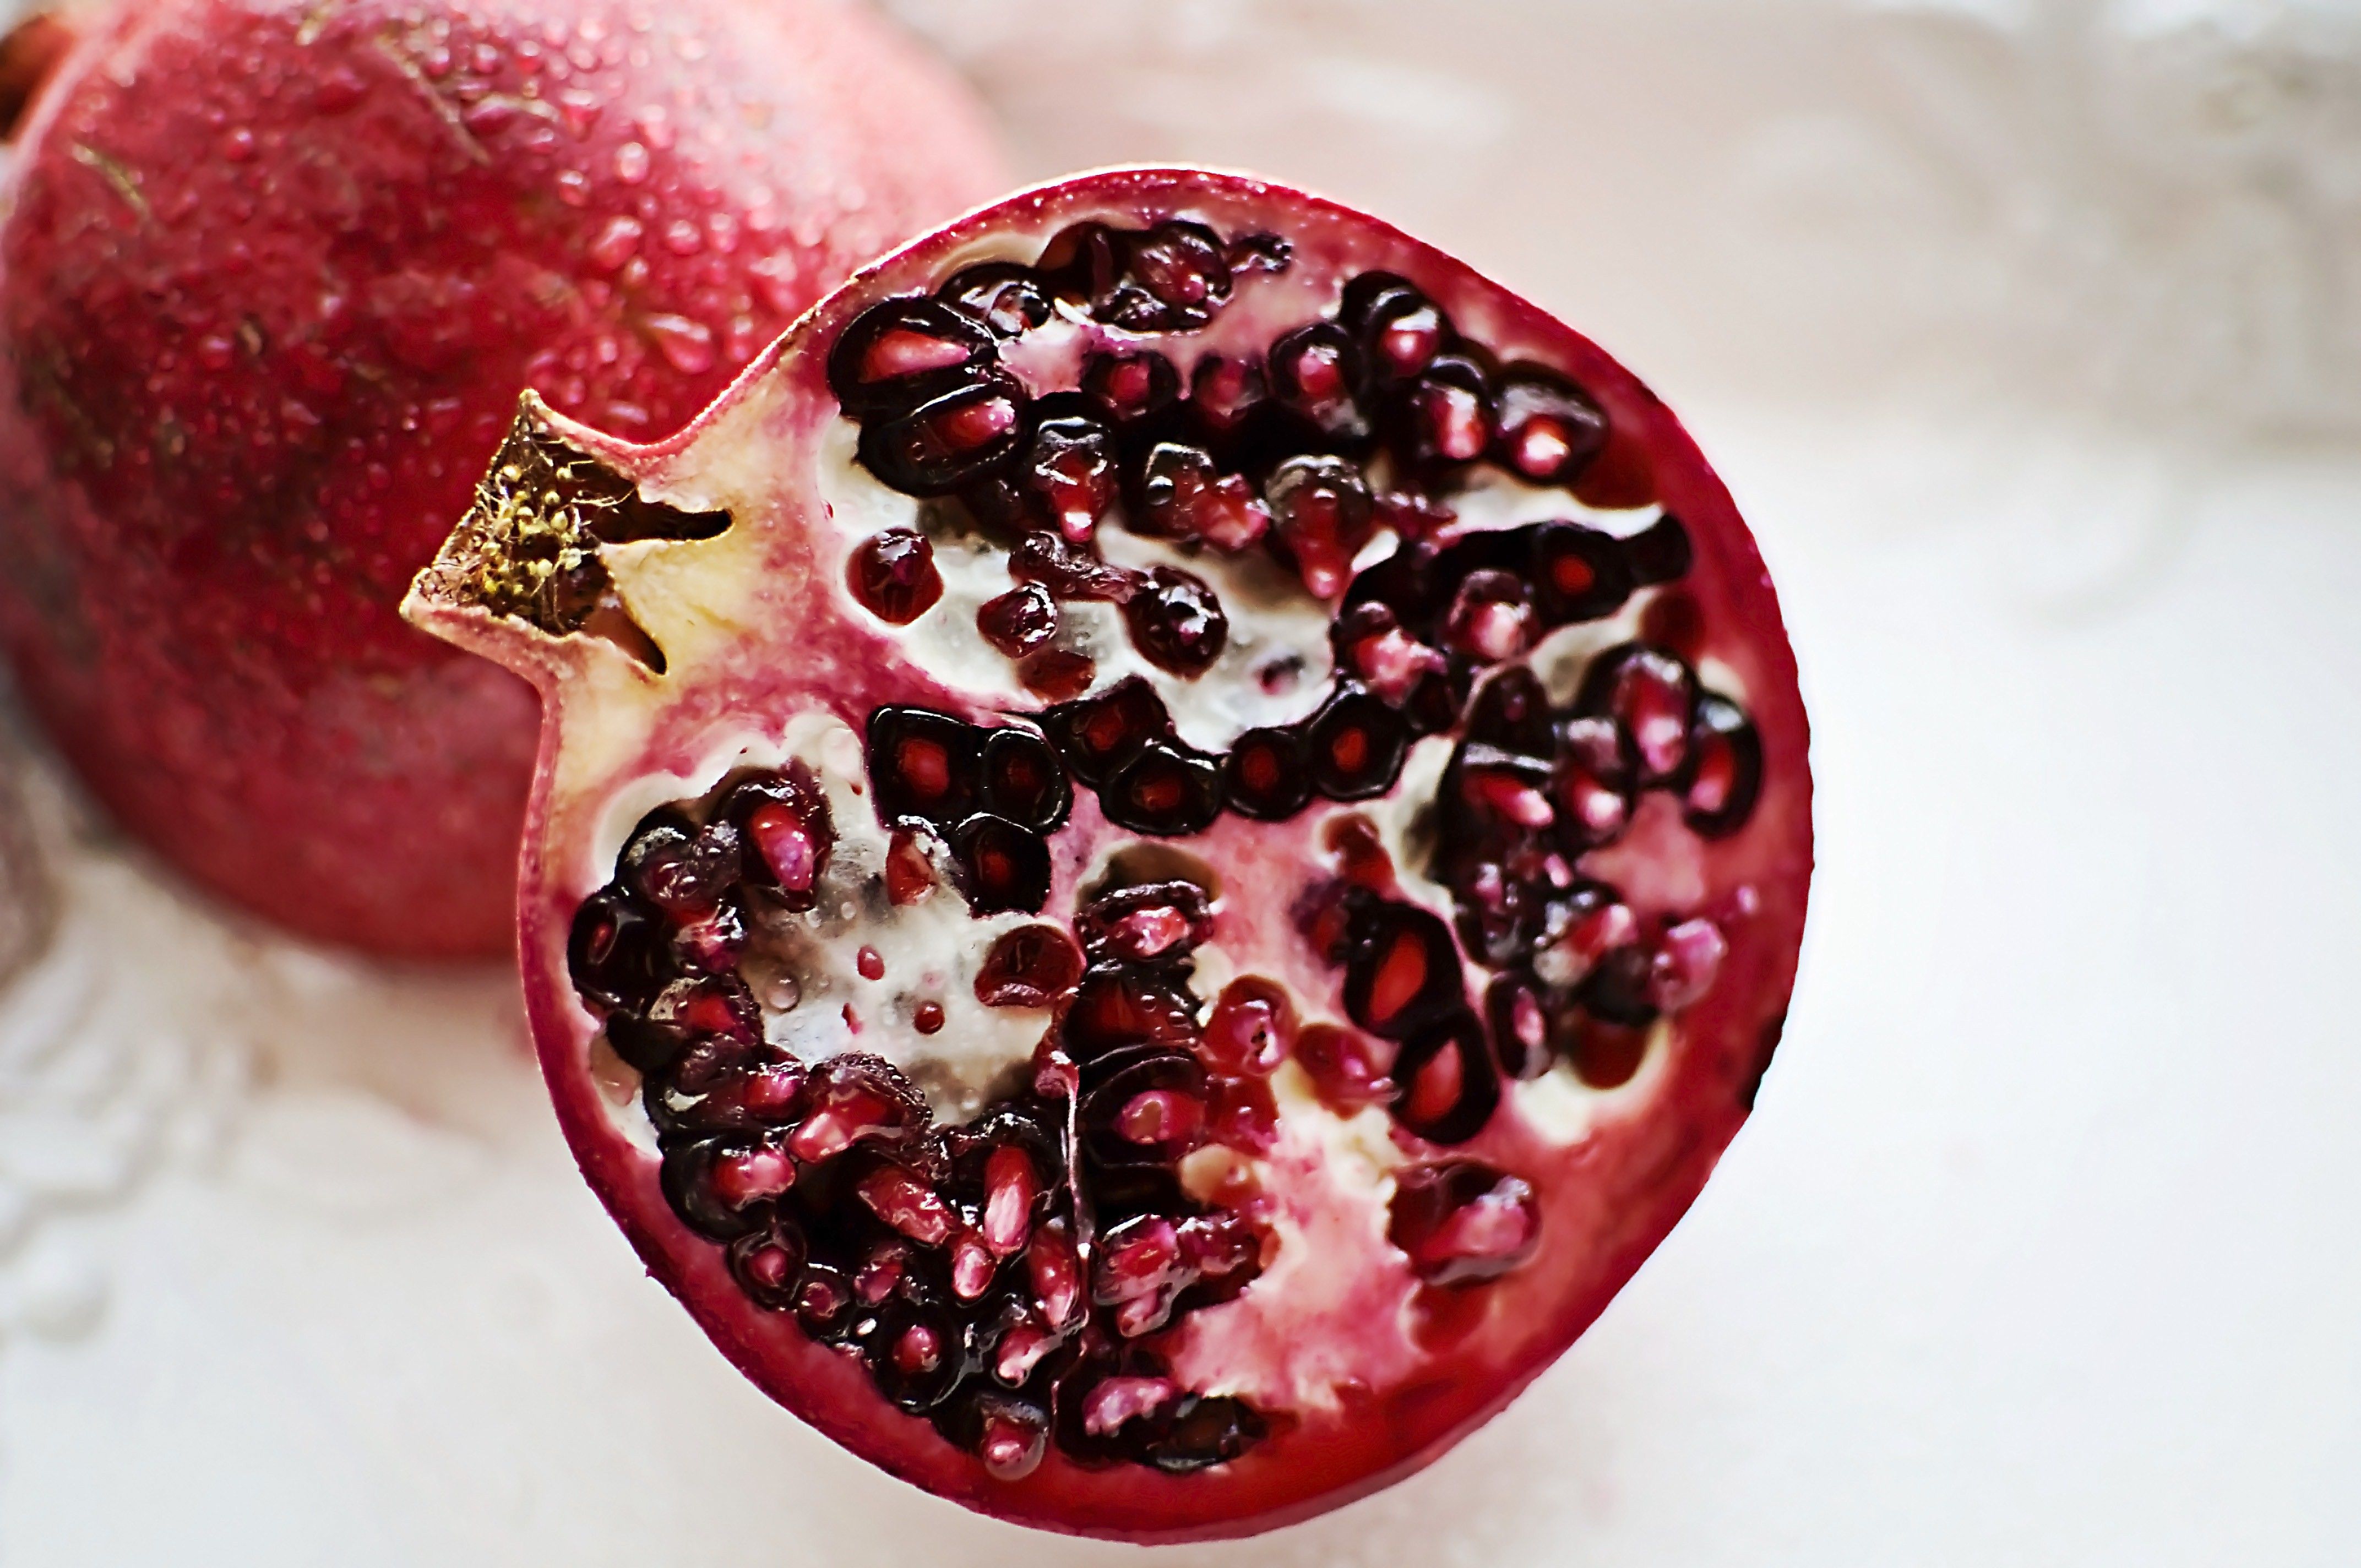 A pomegranate cut in half.